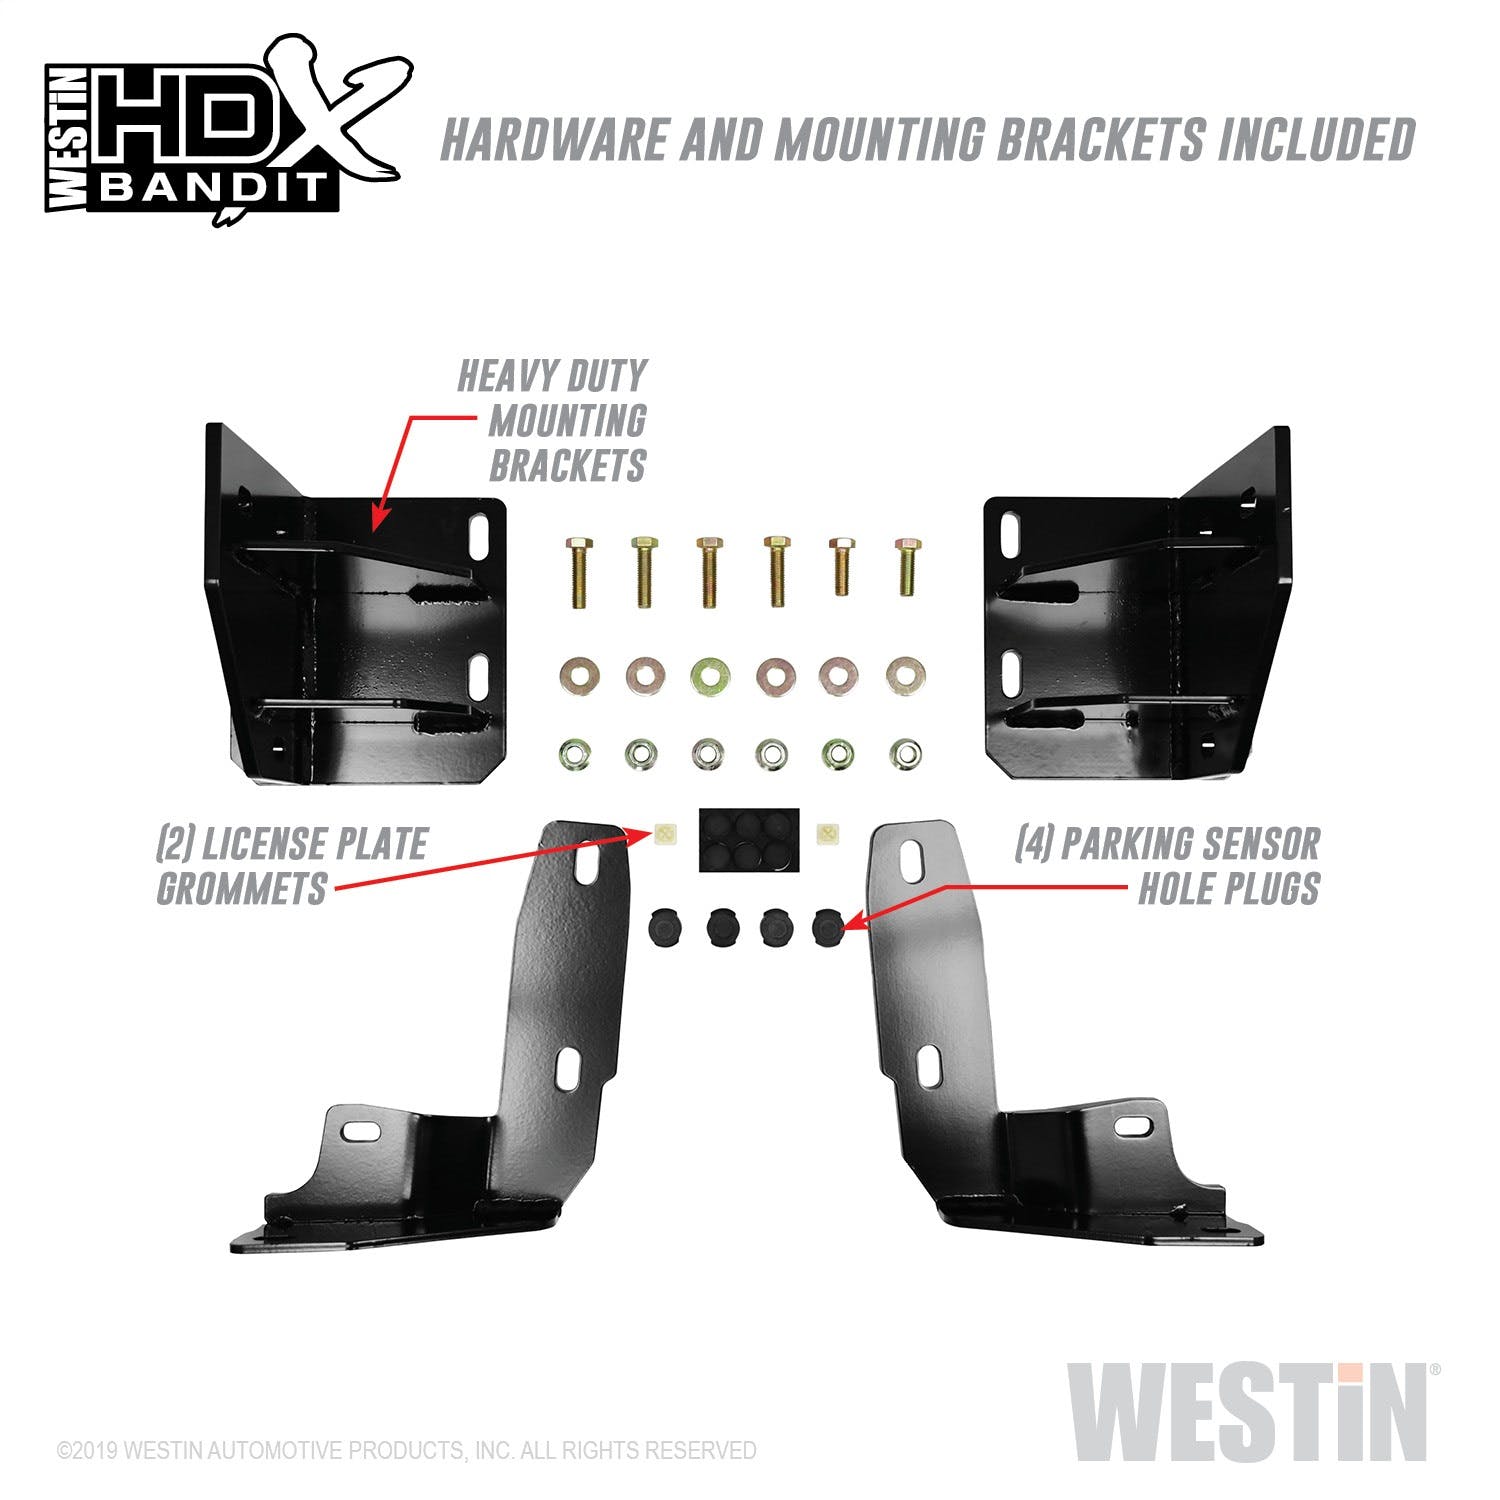 Westin Automotive 58-31155 HDX Bandit Front Bumper Black